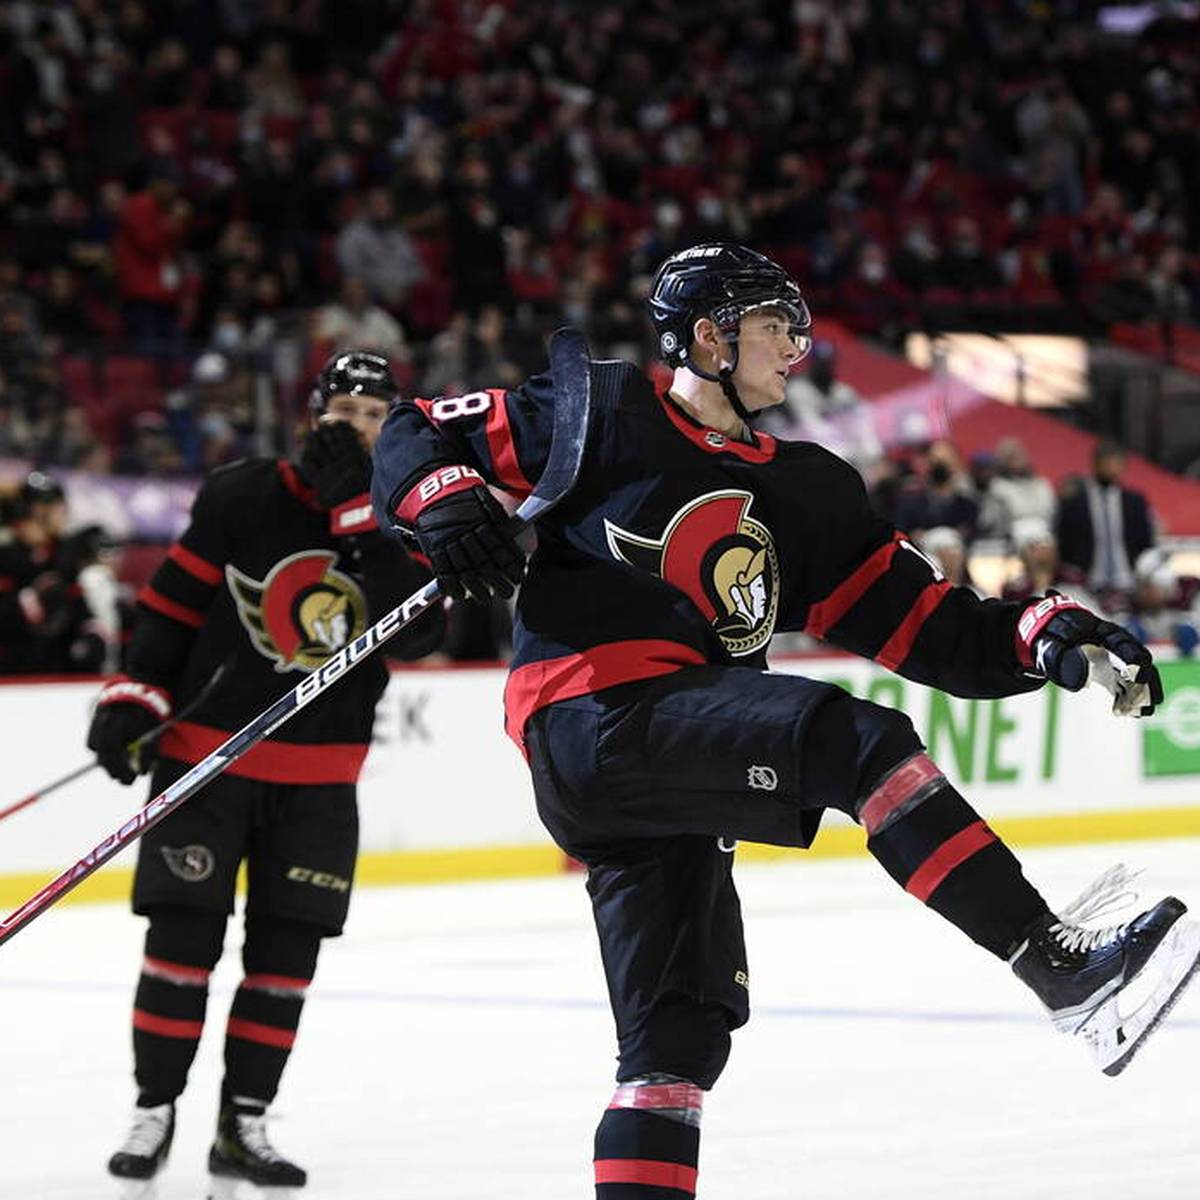 Eishockey-Supertalent Tim Stützle hat seine Ottawa Senators mit einem herrlichen Solo in der NHL zum Sieg geführt.